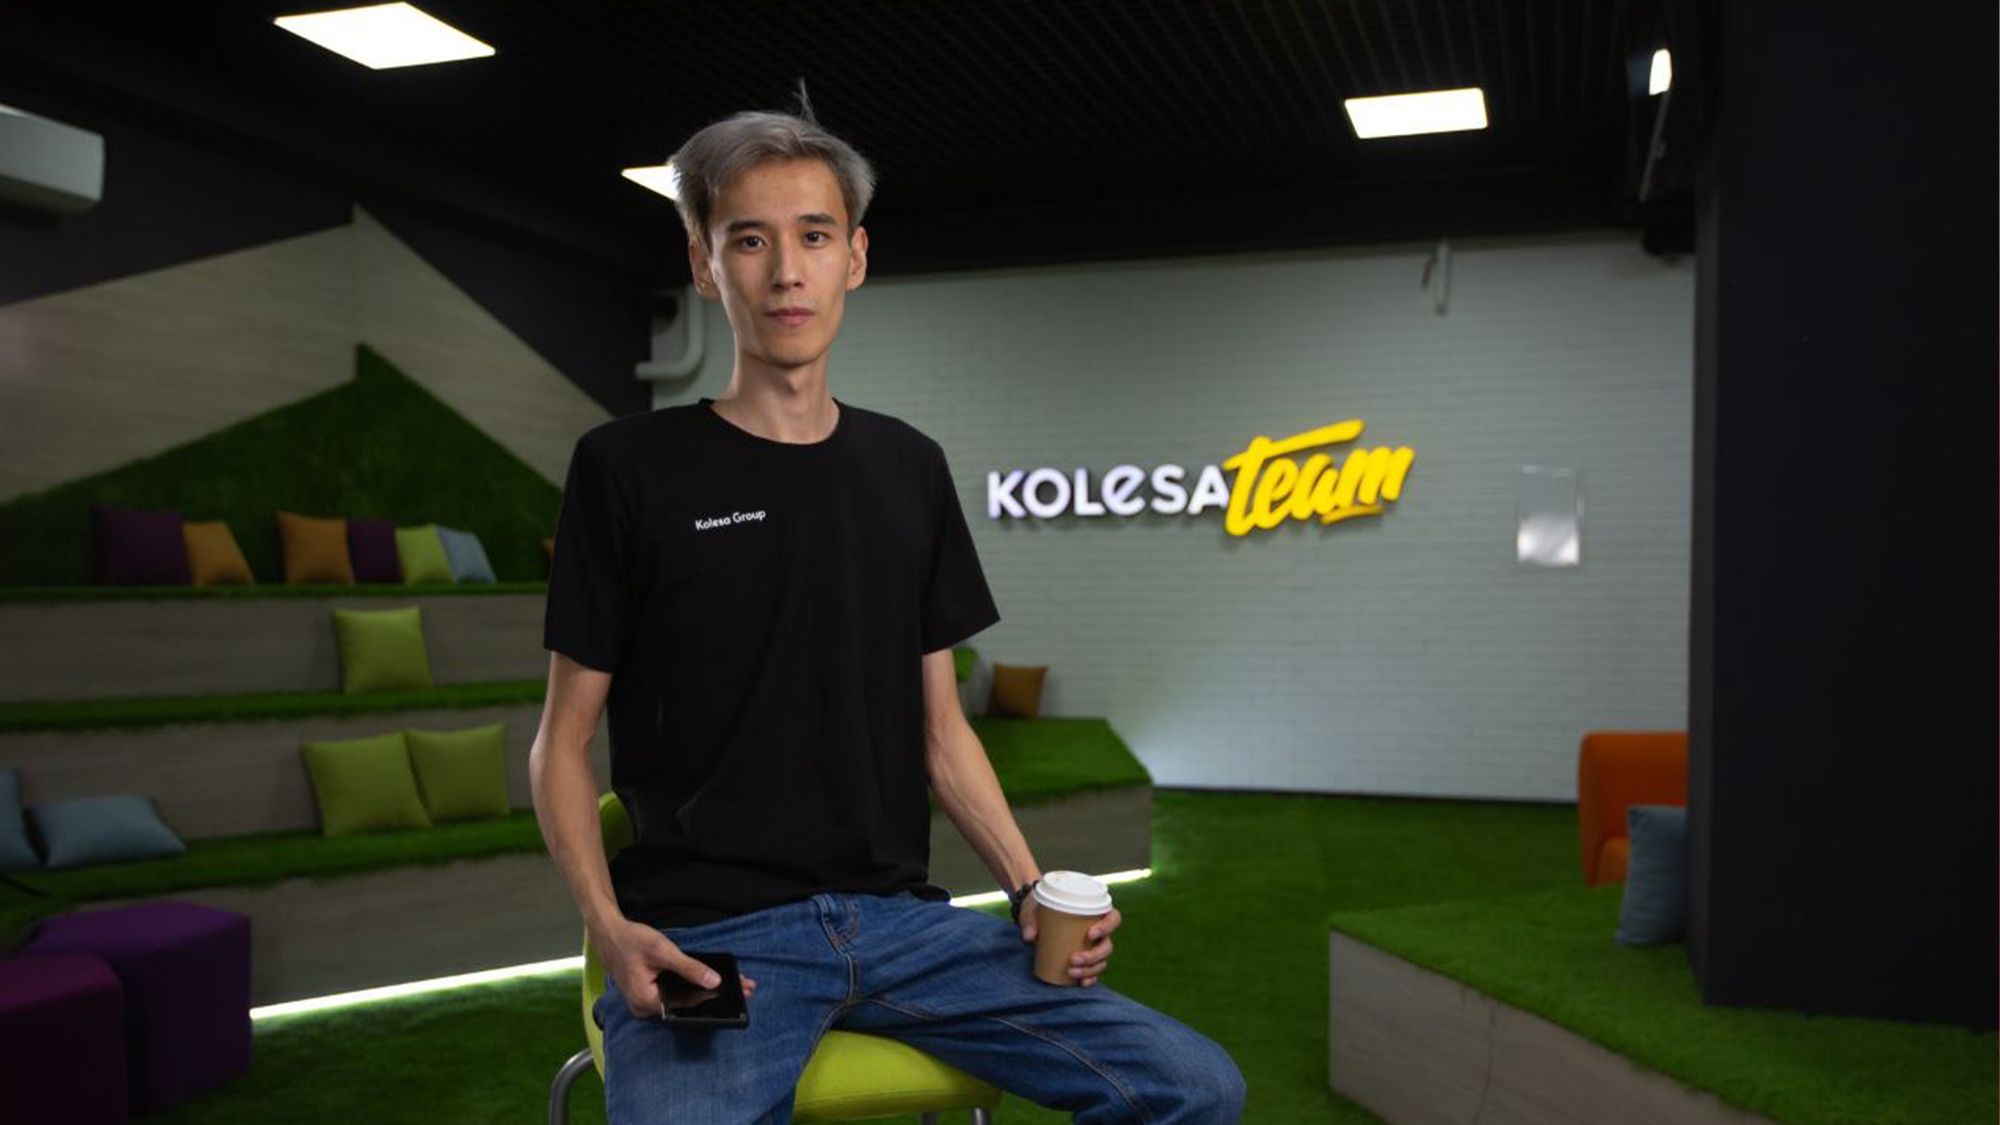  Ильяс Касым, Team Lead мобильной разработки продукта Kolesa.kz